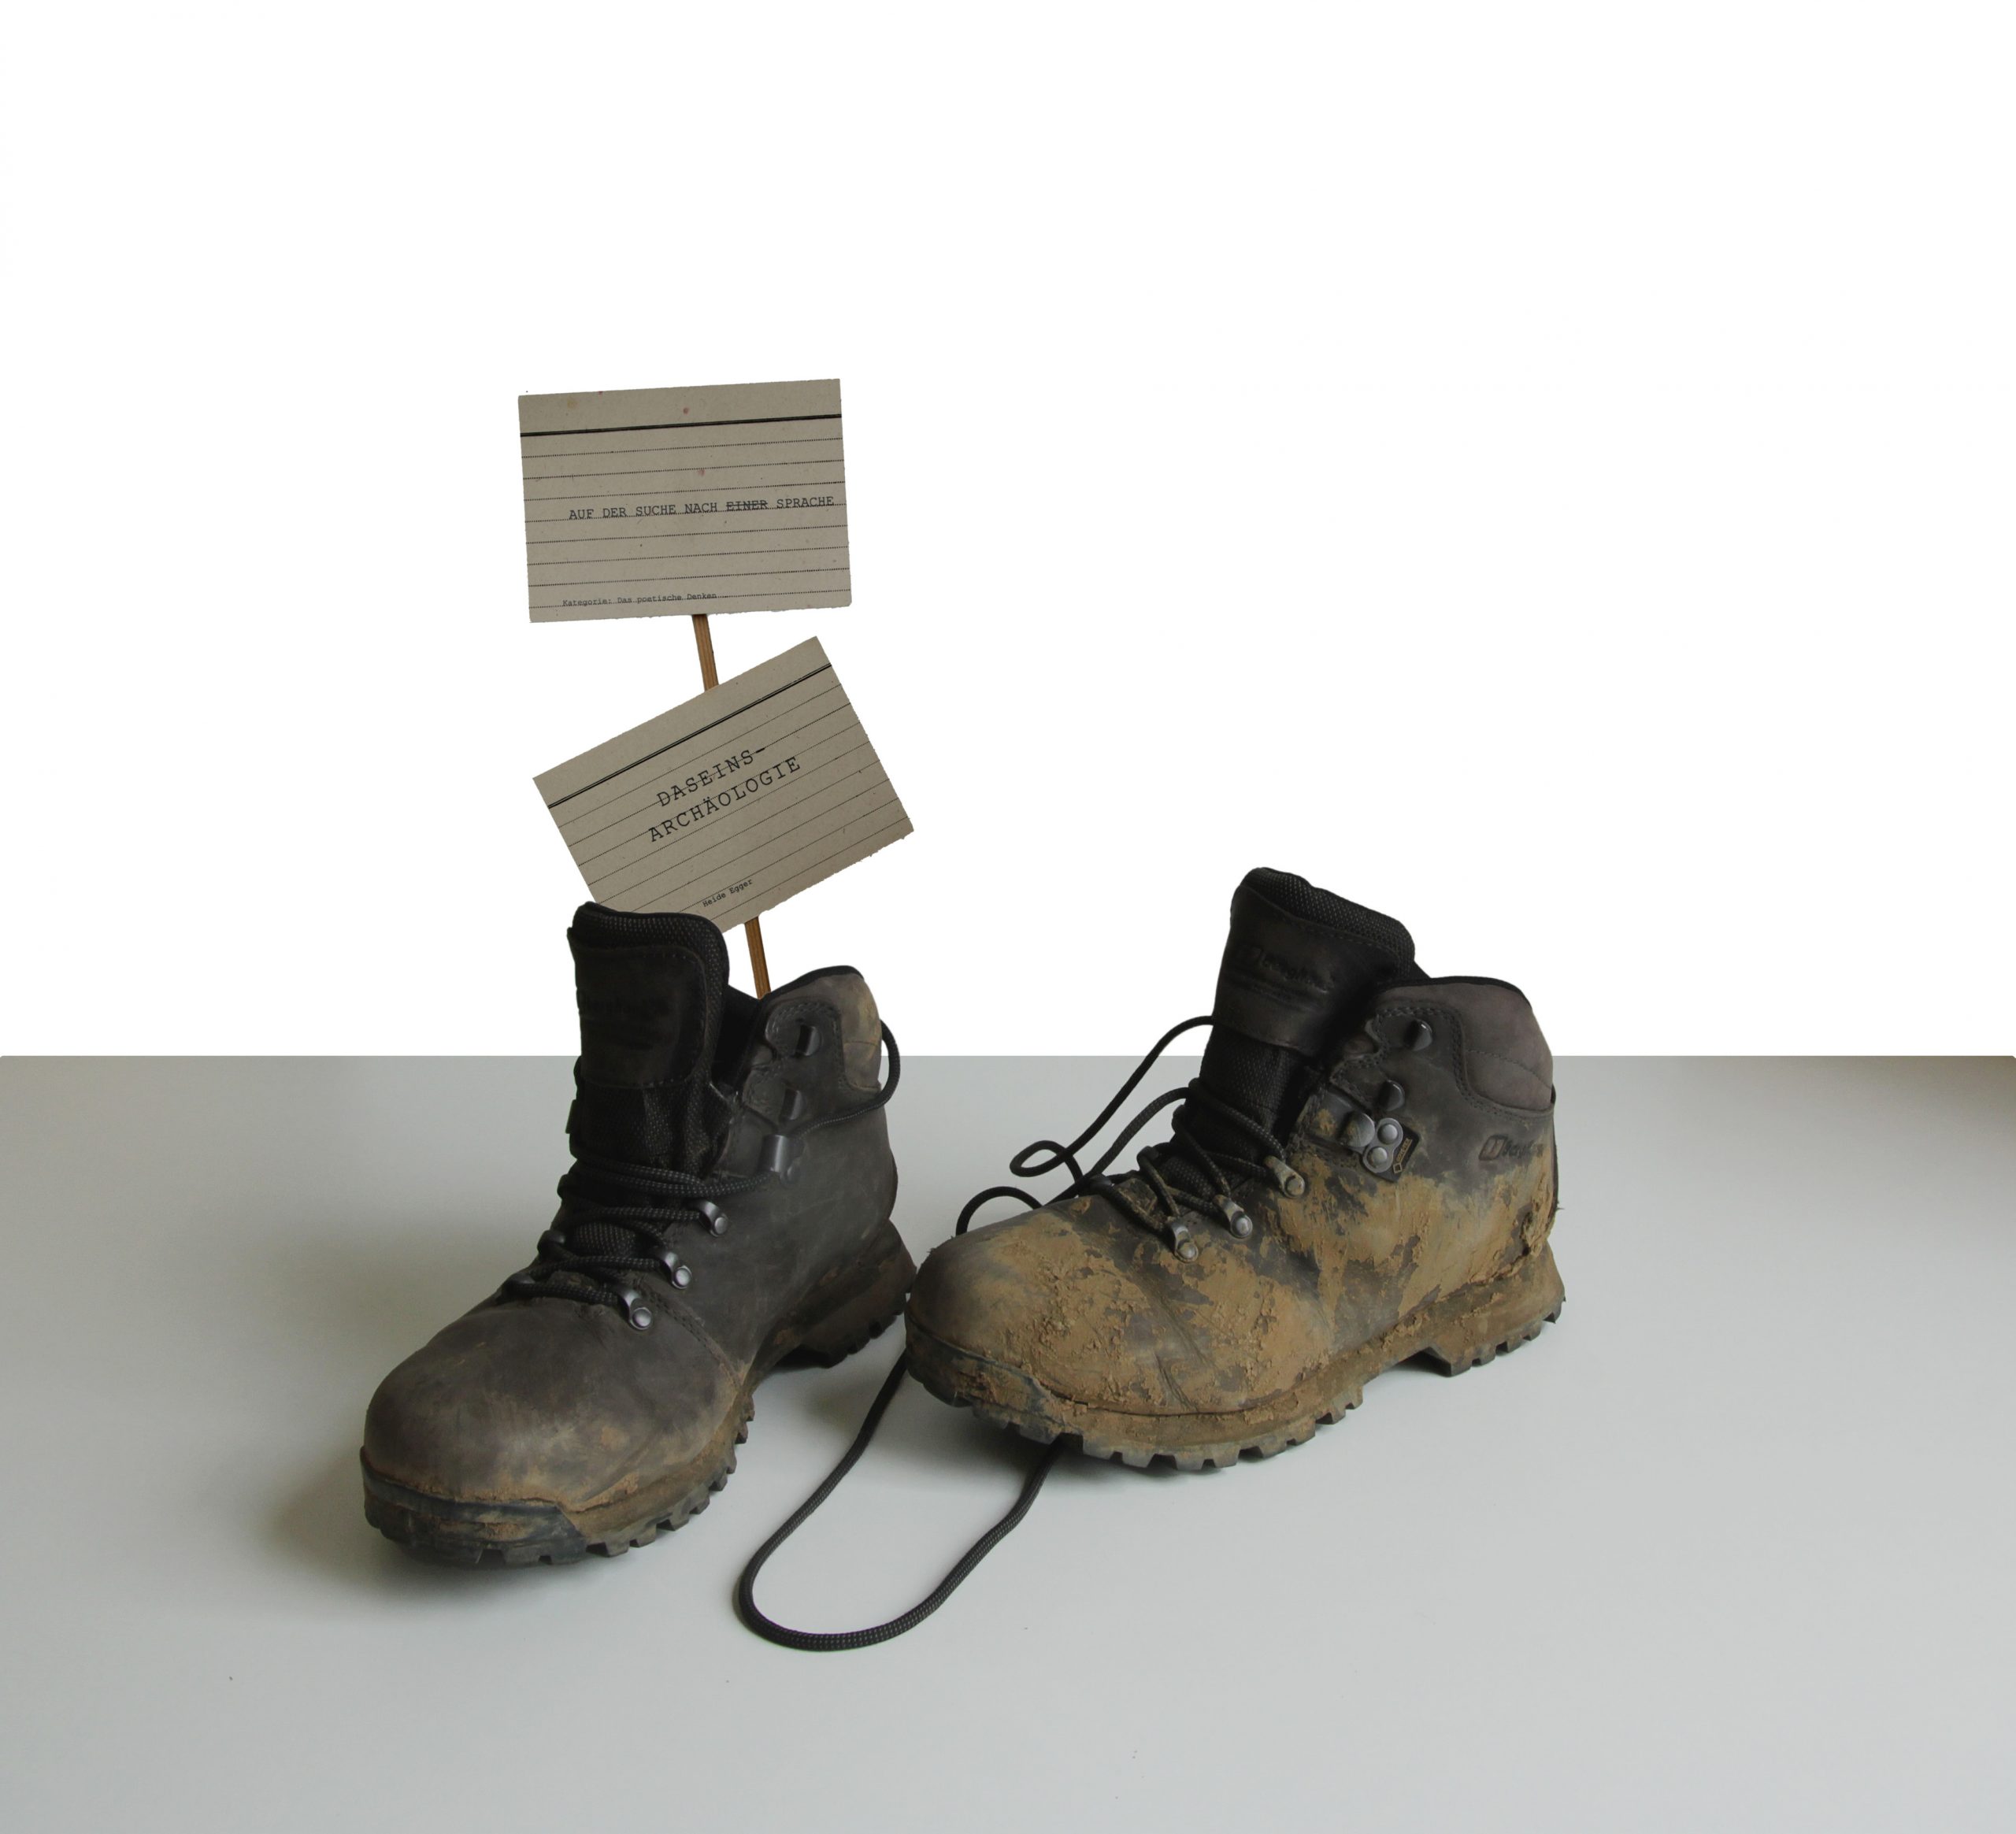 Zwei dreckige Wanderschuhe, wobei im linken Schuh zwei bedruckte Karteikarten auf Holzstielen stecken.